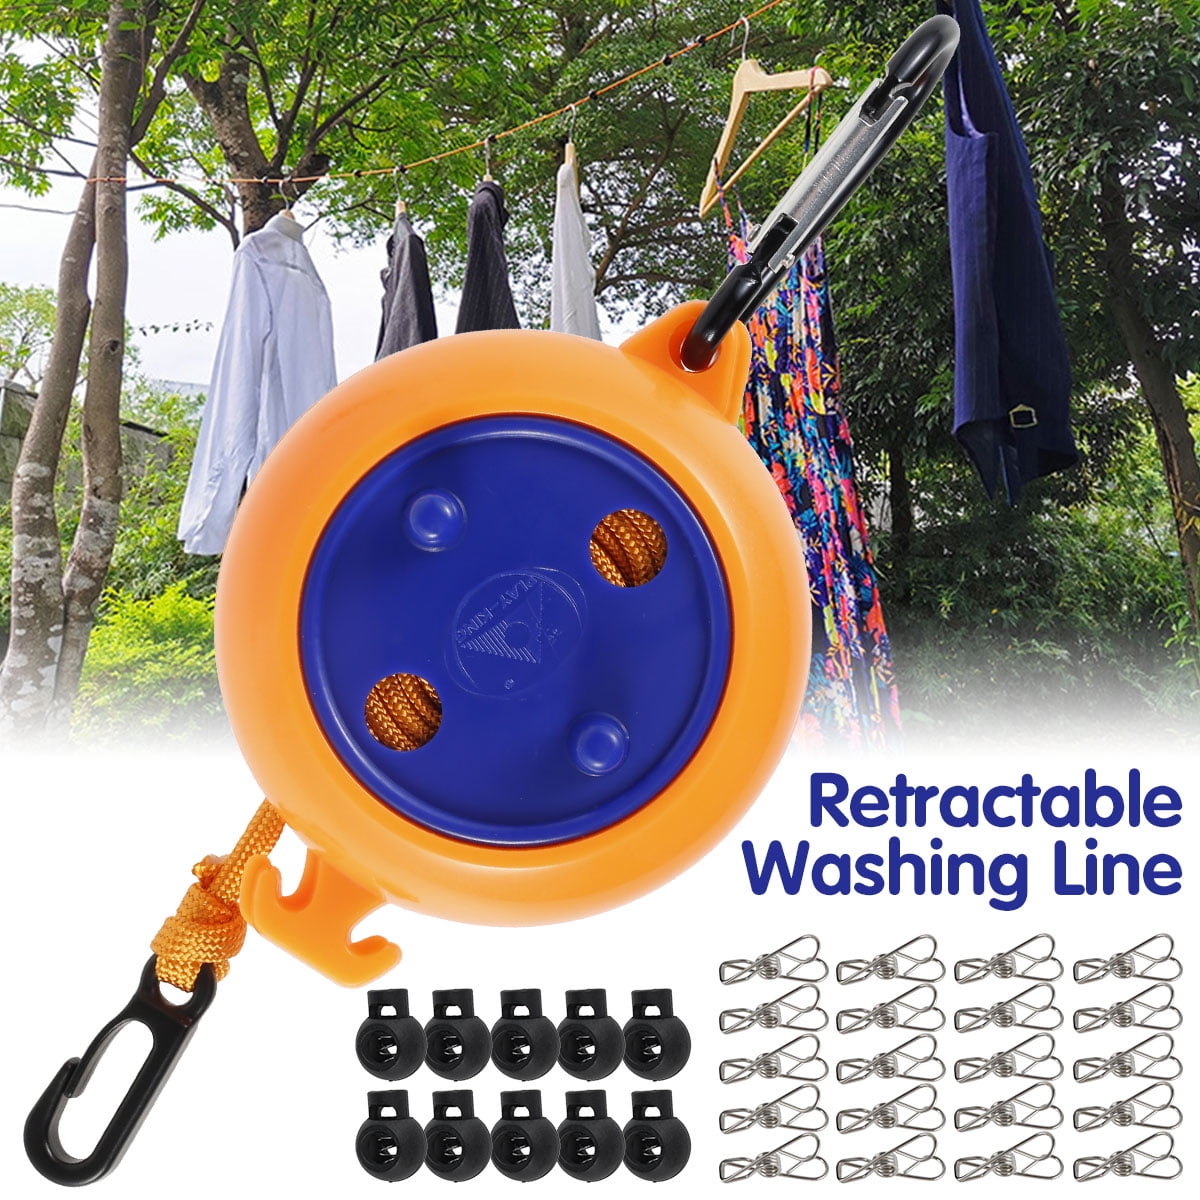 8 Best Retractable Washing Lines - Outdoor & Indoor